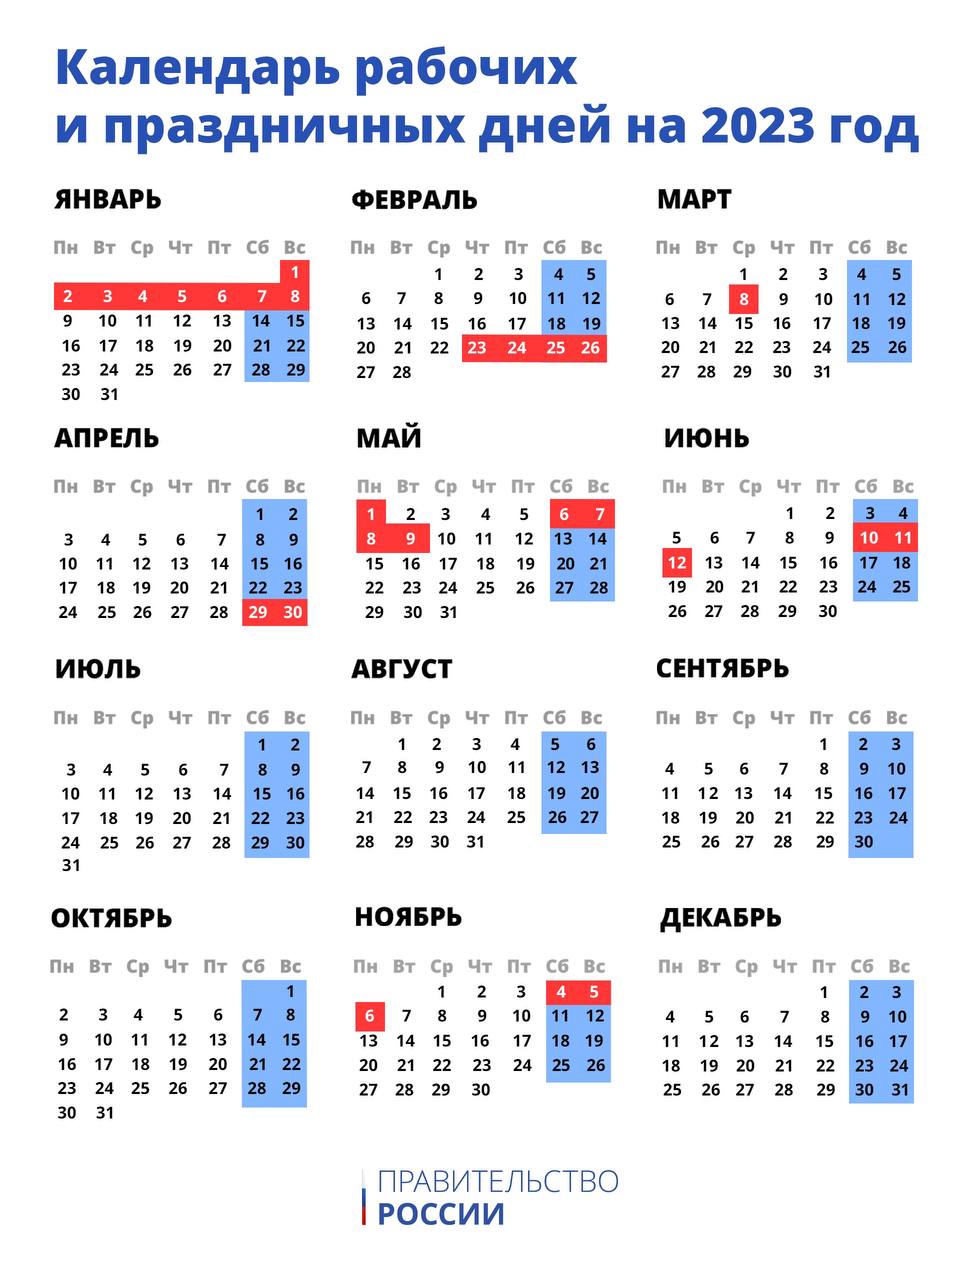 Правительство России утвердило календарь праздничных дней на 2023 год